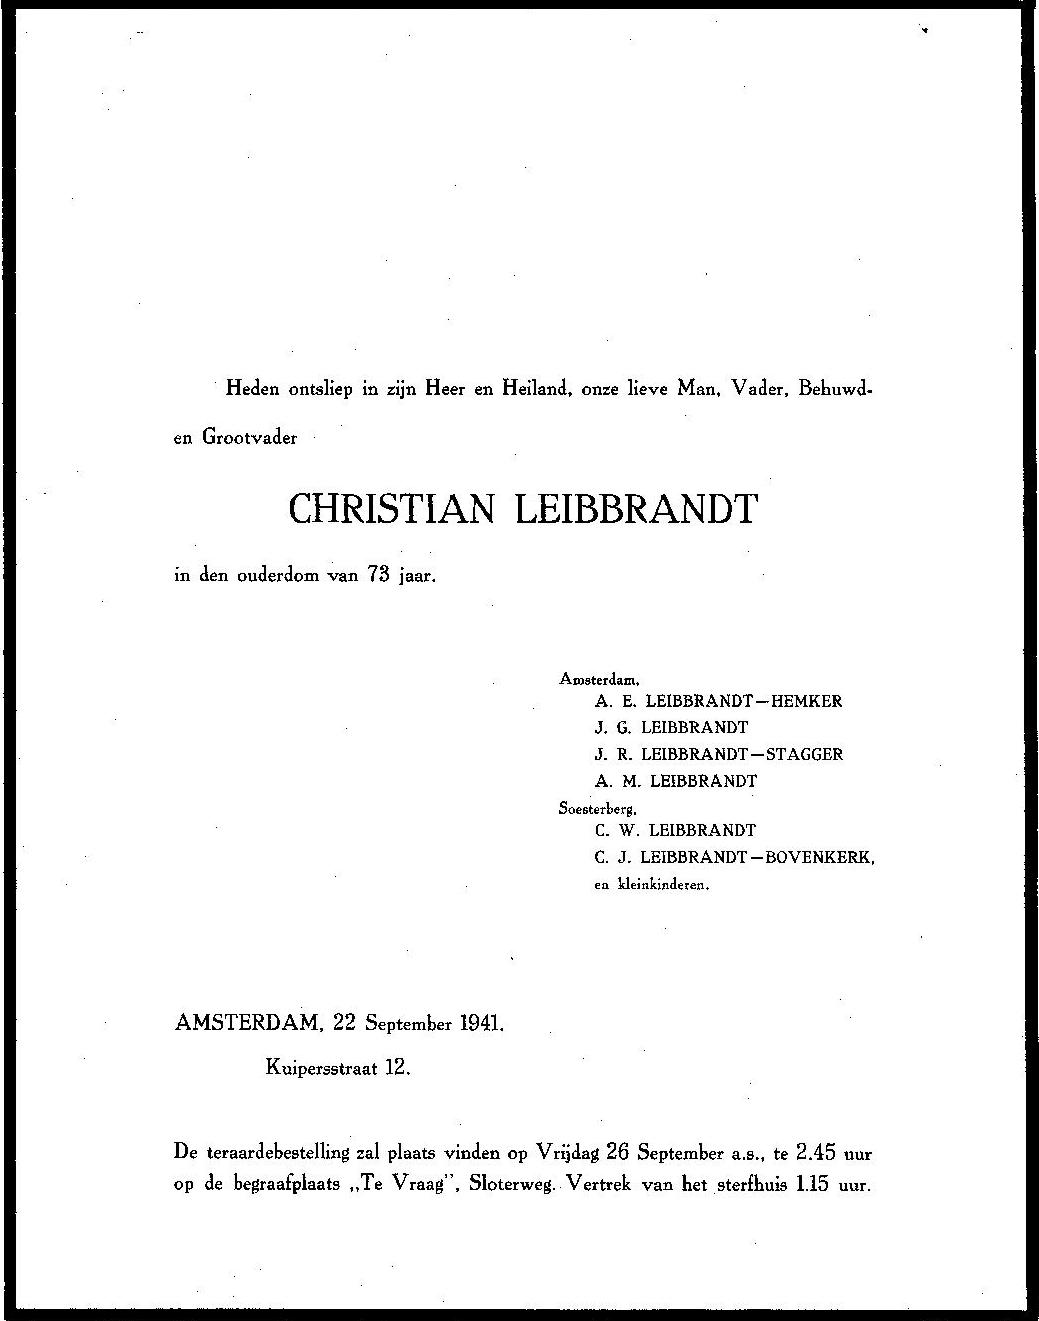 Overljdensbericht van Chr.Leibbrandt, 22-9-1941.jpg